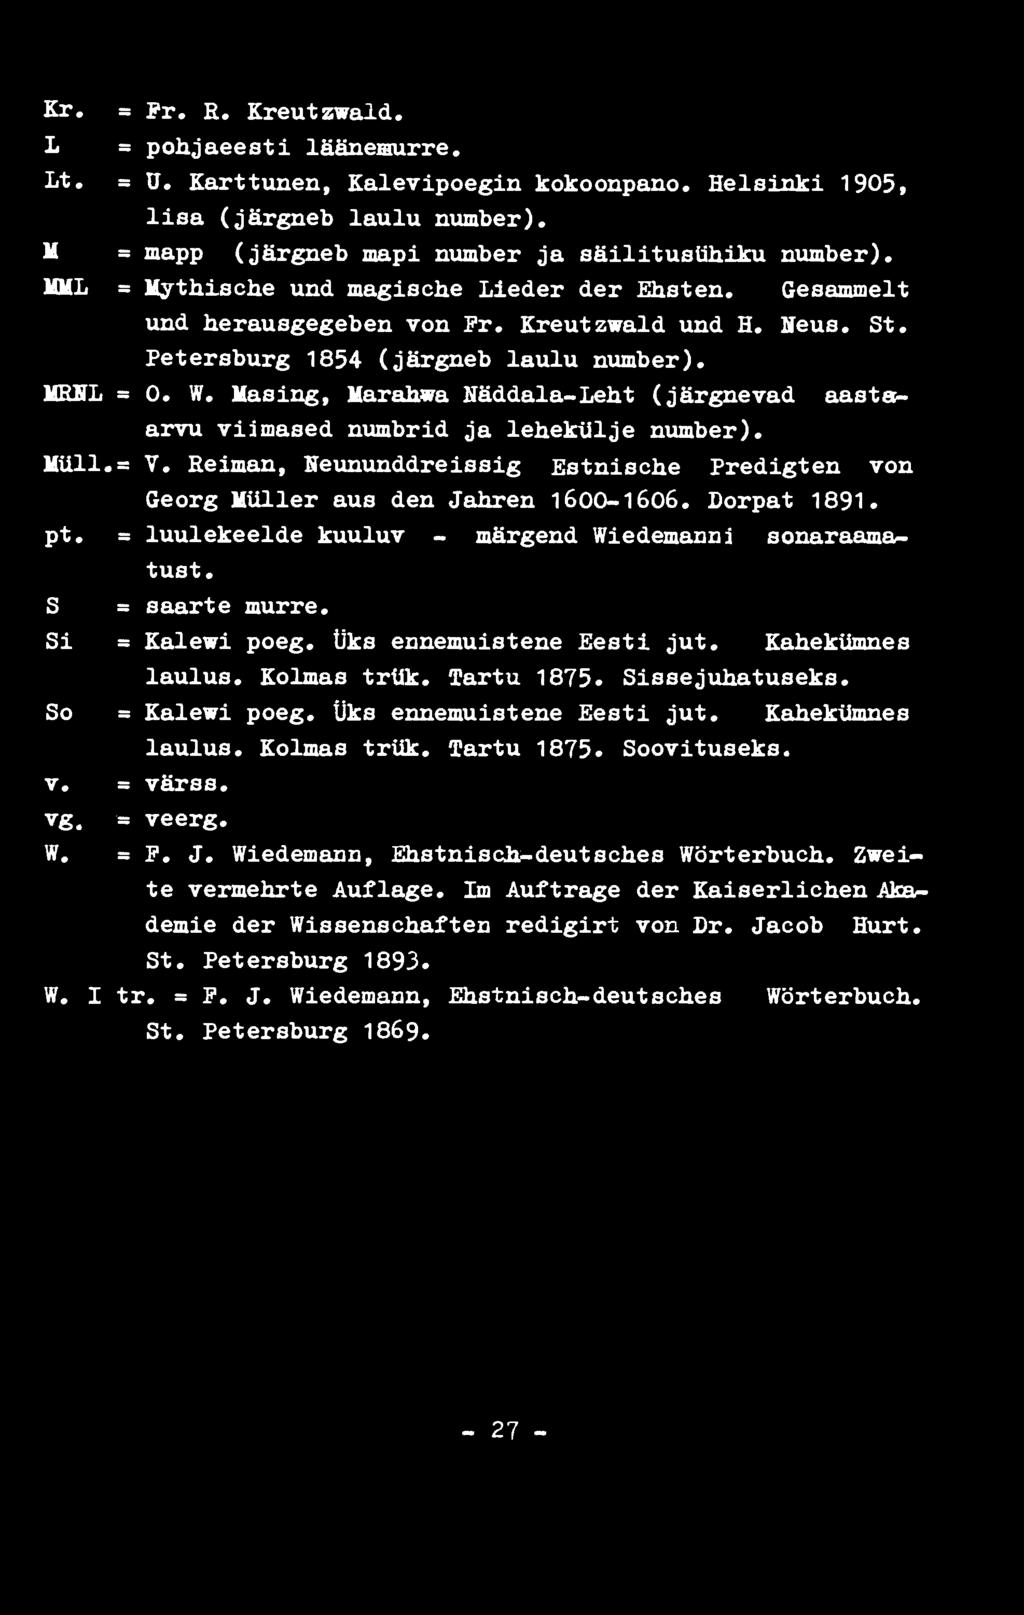 Masing, Marahwa Näddala-Leht (järgnevad aastaarvu viimased numbrid ja lehekülje number). Müll, s V. Relman, Heununddreis s ig Estnische Predigten von Georg Müller aus den Jahren 1600-1606.